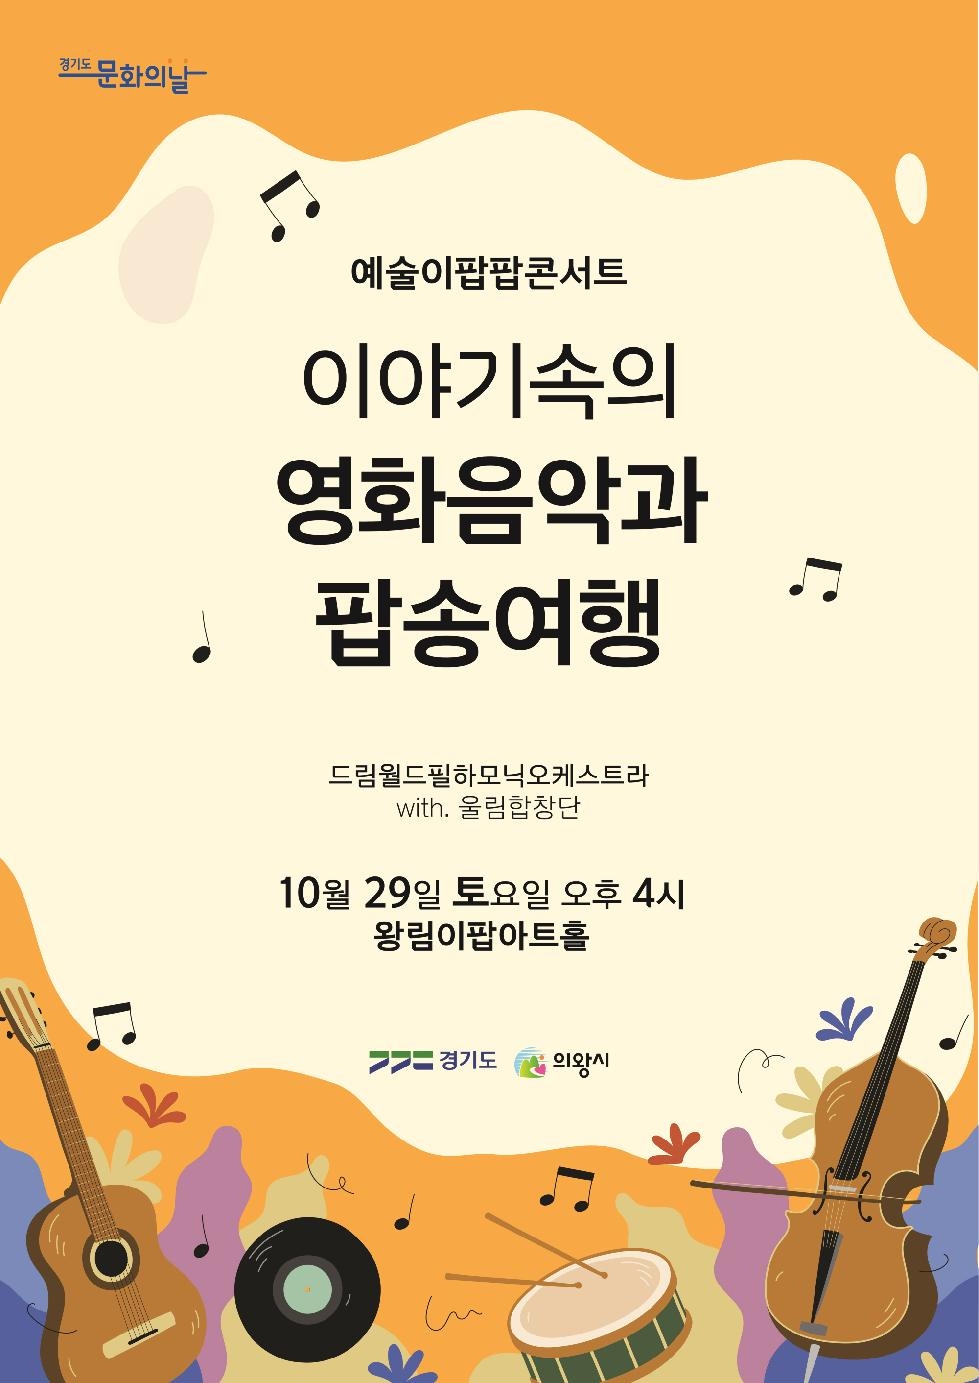 의왕시 왕림이팝아트홀 문화의 날  ‘이야기 속의 영화음악과 팝송 여행’공연 개최